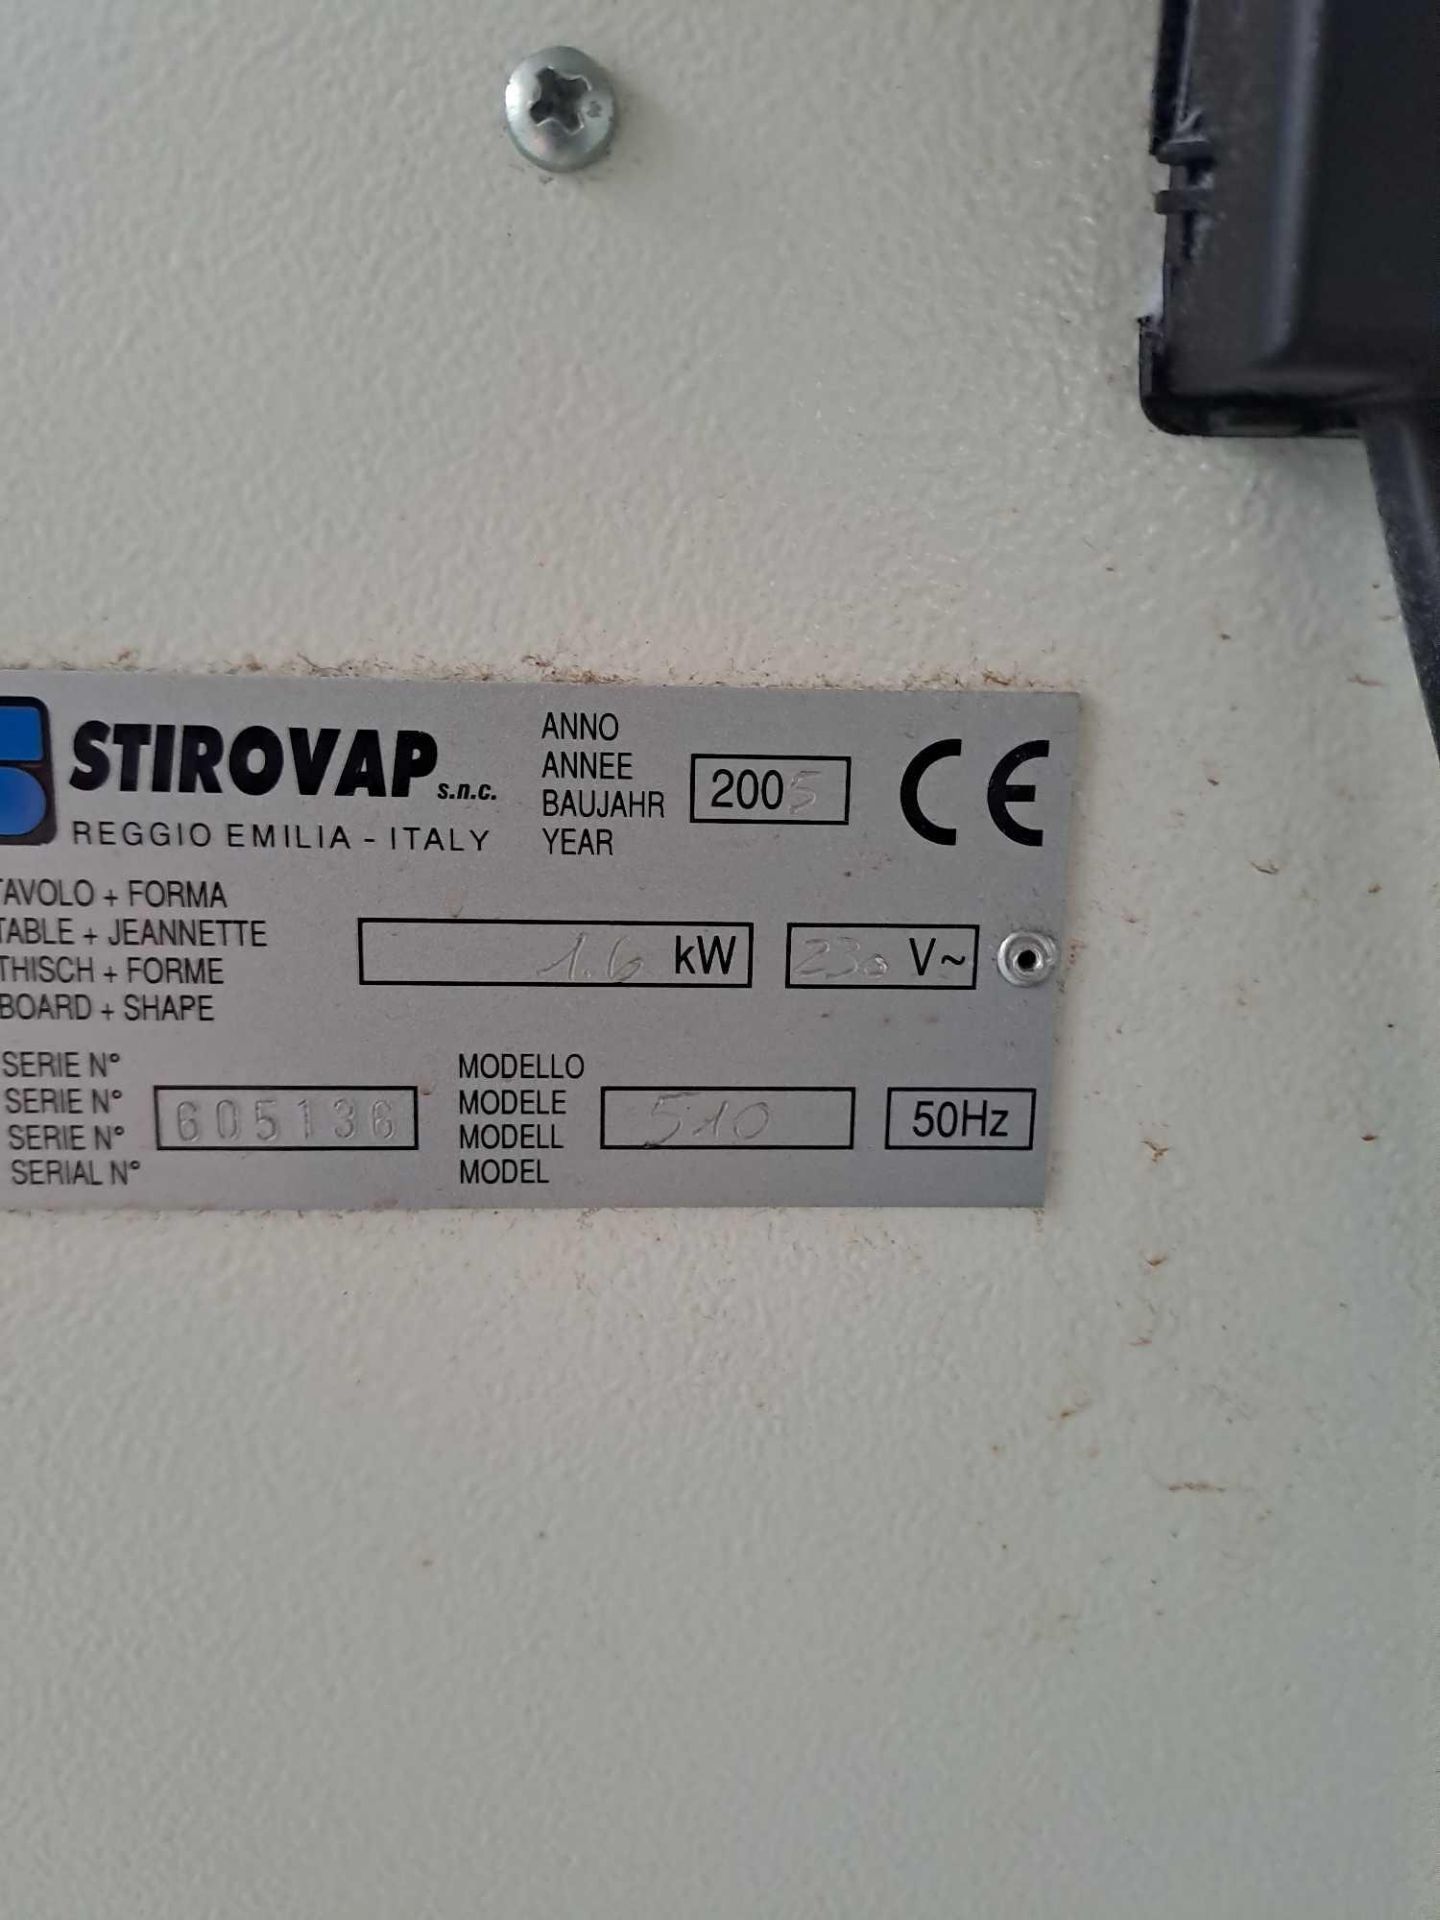 Stirovap 510 Generator (2019) - Image 4 of 6